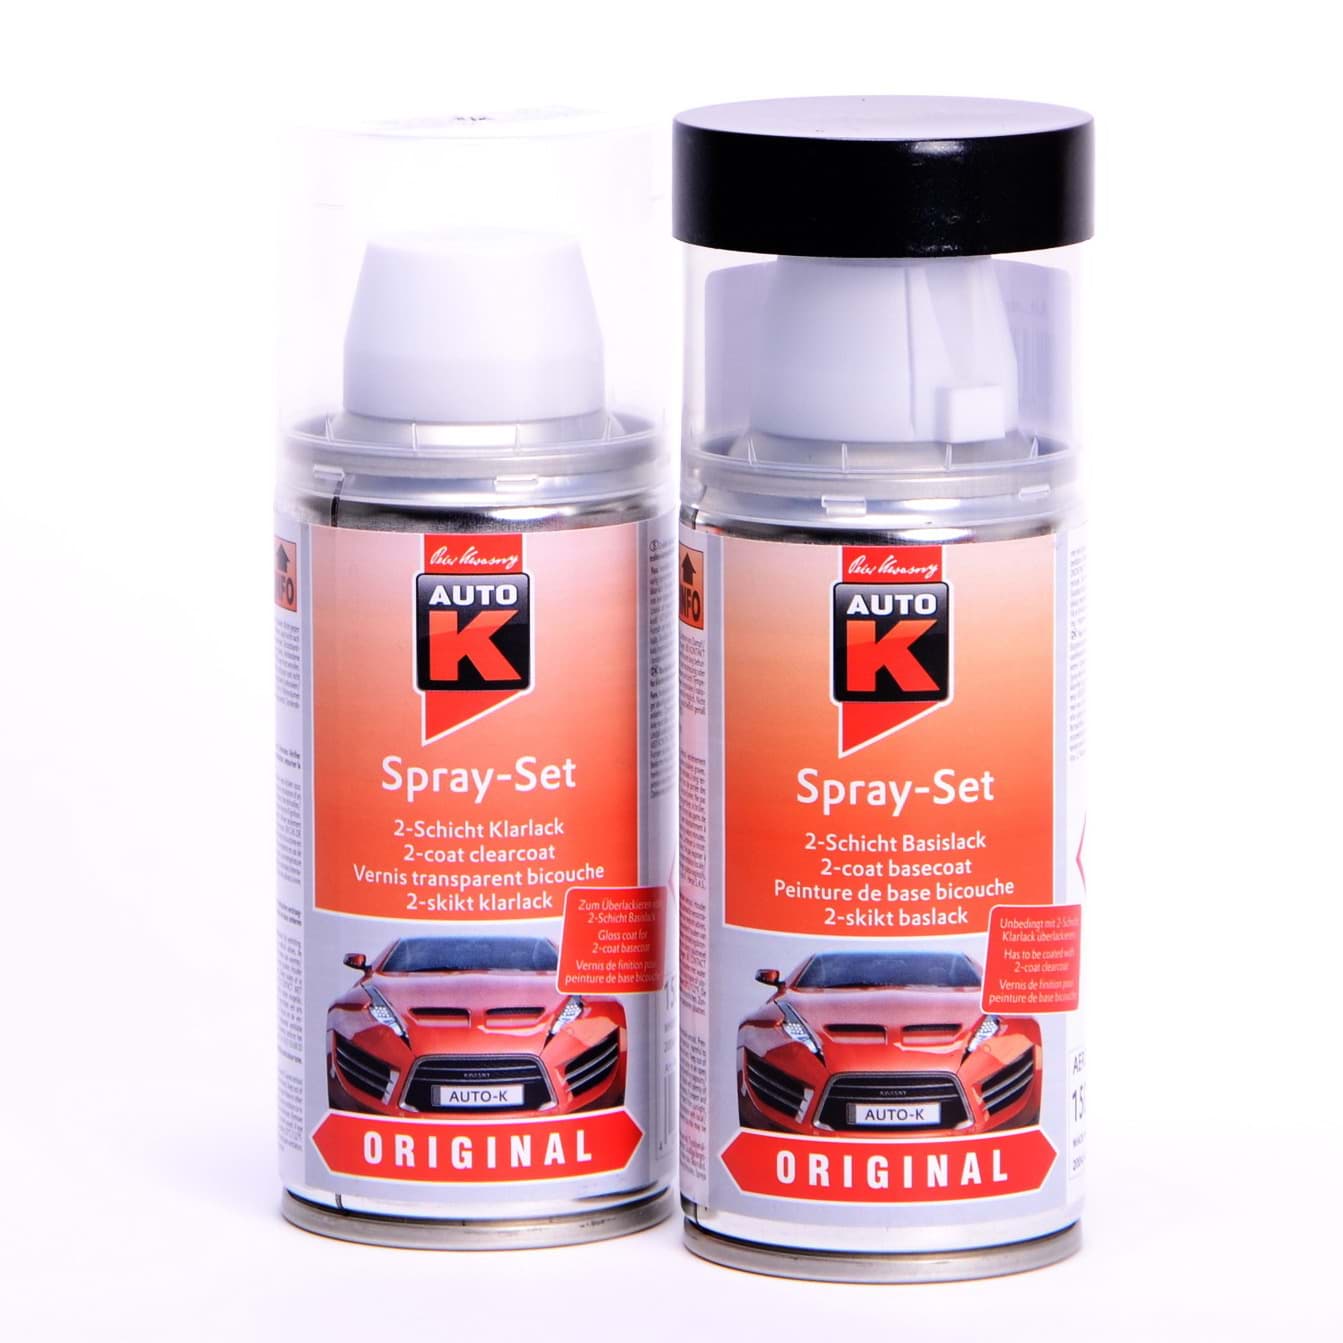 Afbeelding van Auto-K Spray-Set Autolack für Opel 177 Karbongrau met 21478